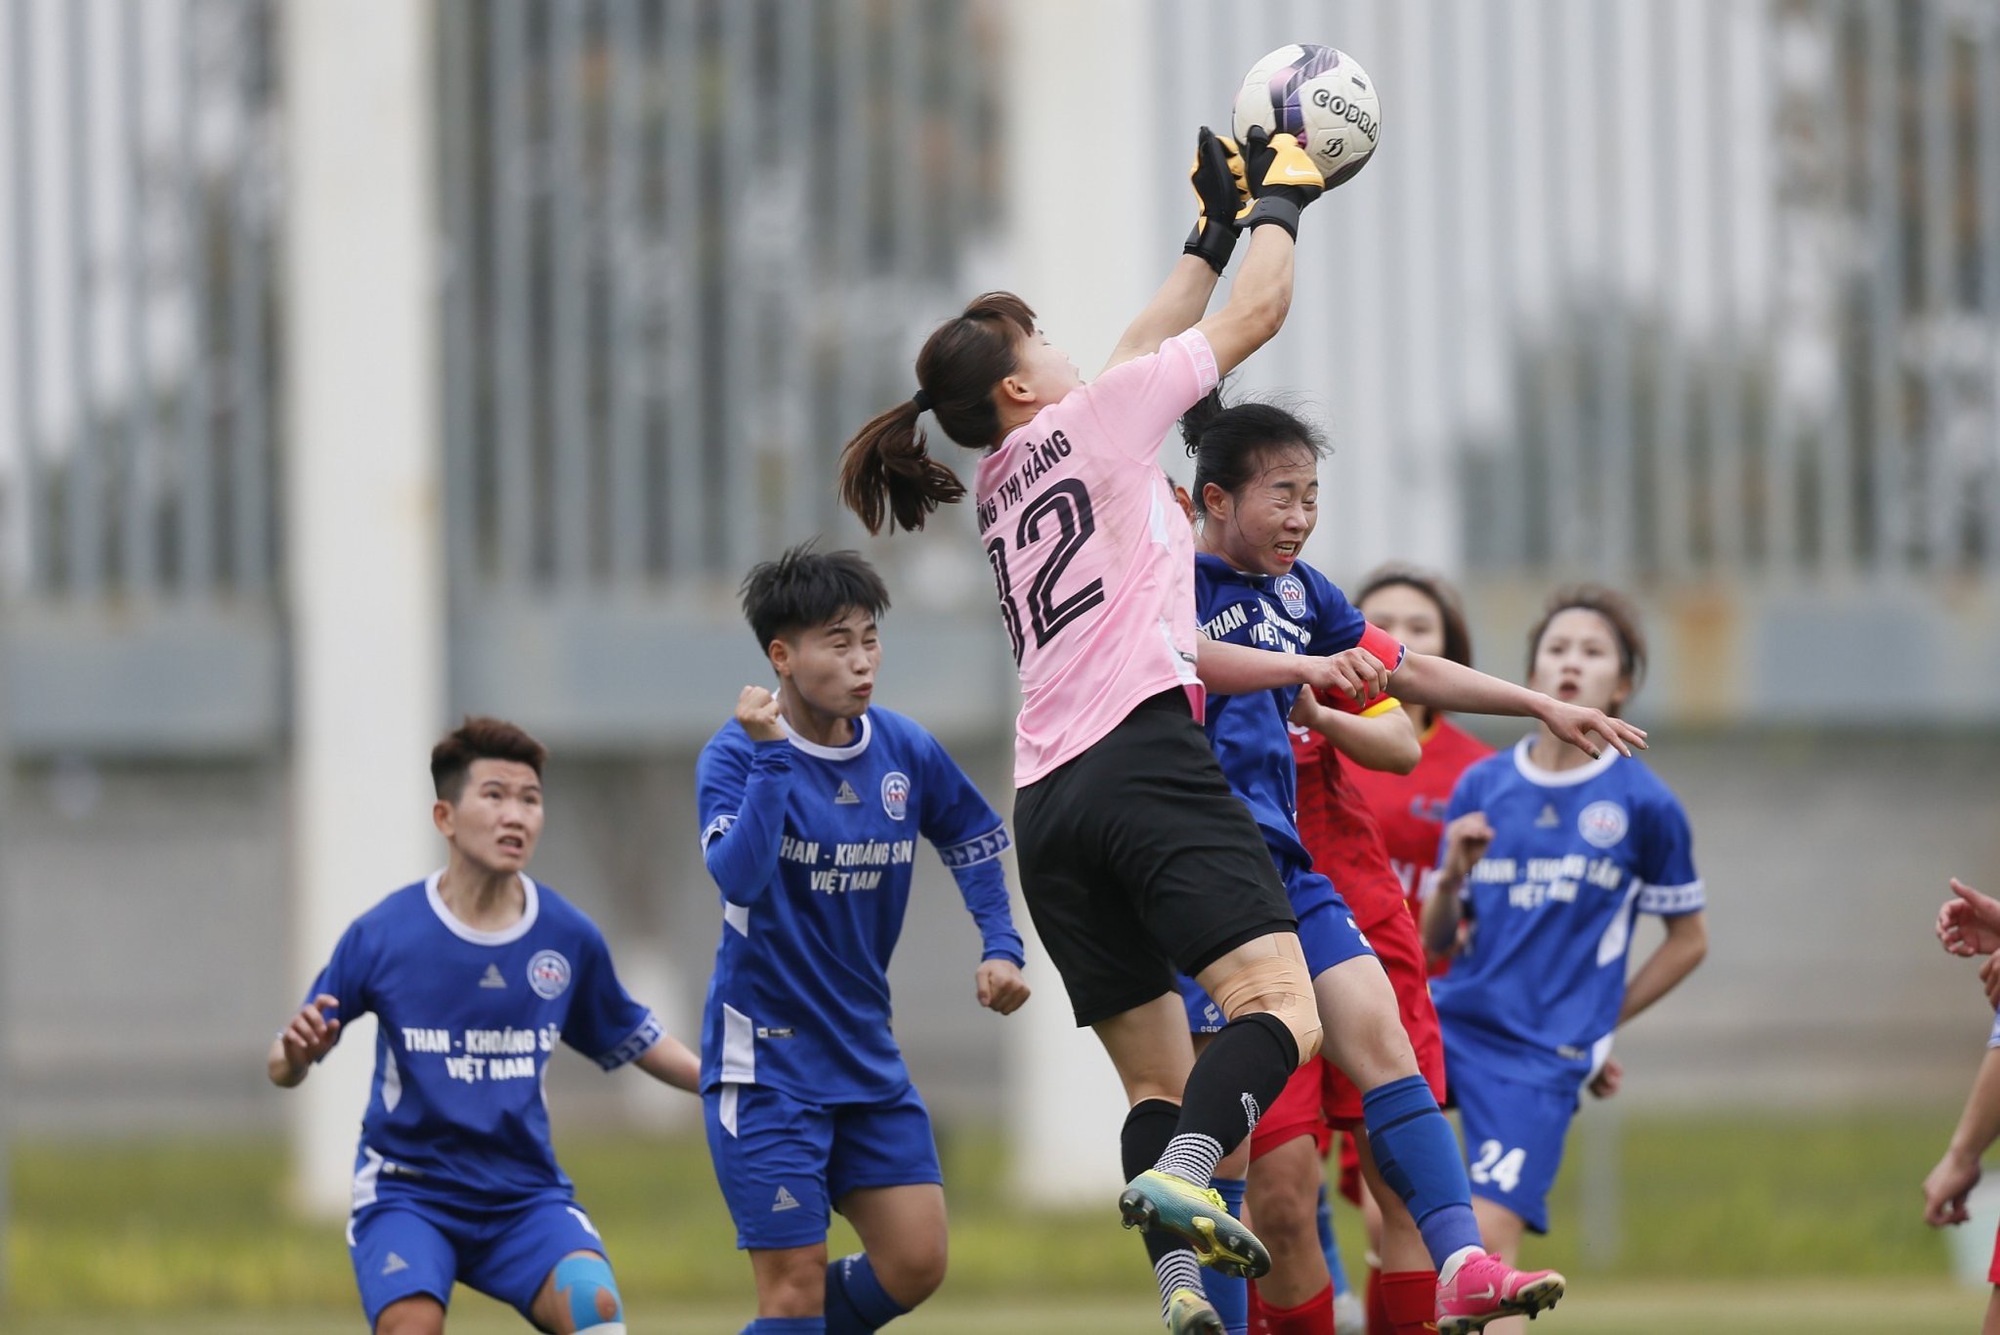 CLB bóng đá nữ Than khoáng sản Việt Nam lần đầu đoạt cúp quốc gia  - Ảnh 3.